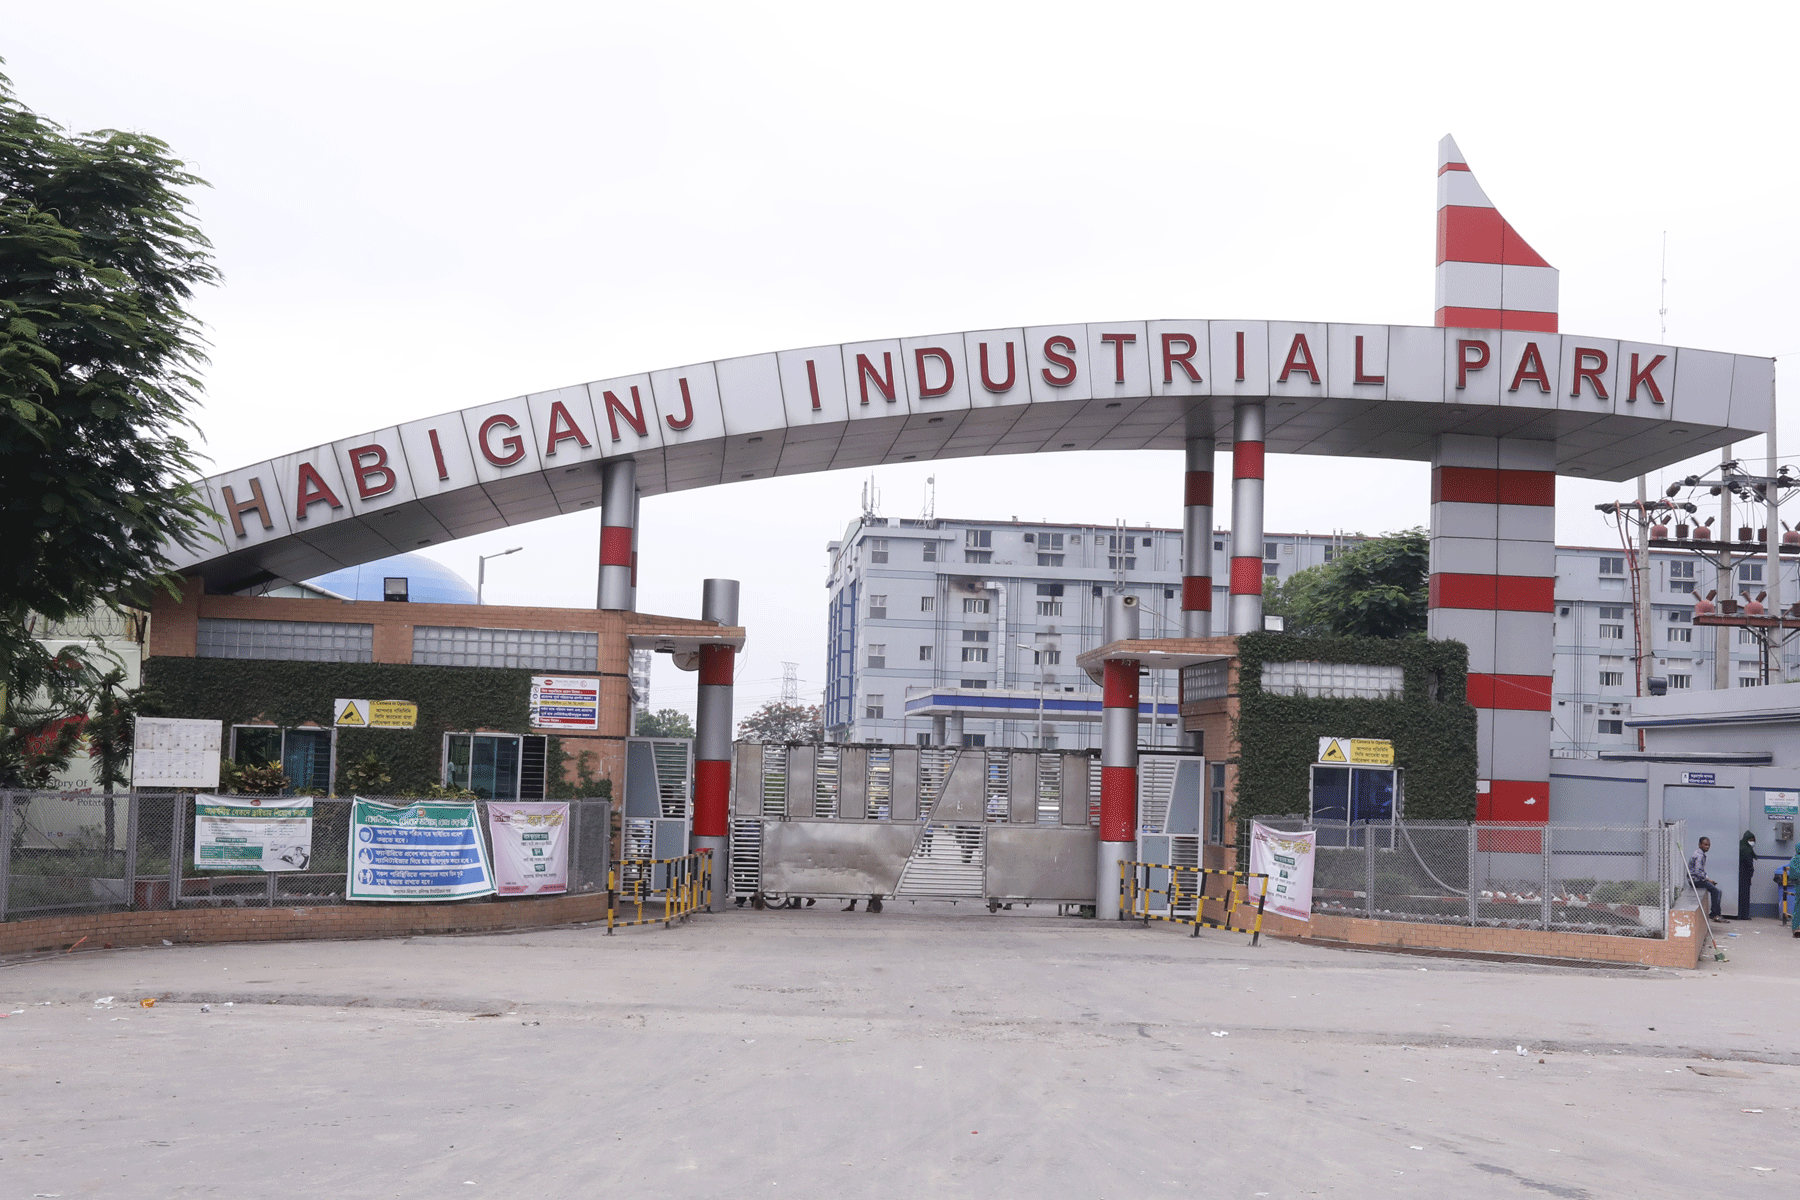 Hobiganj Industrial Park Main Gate